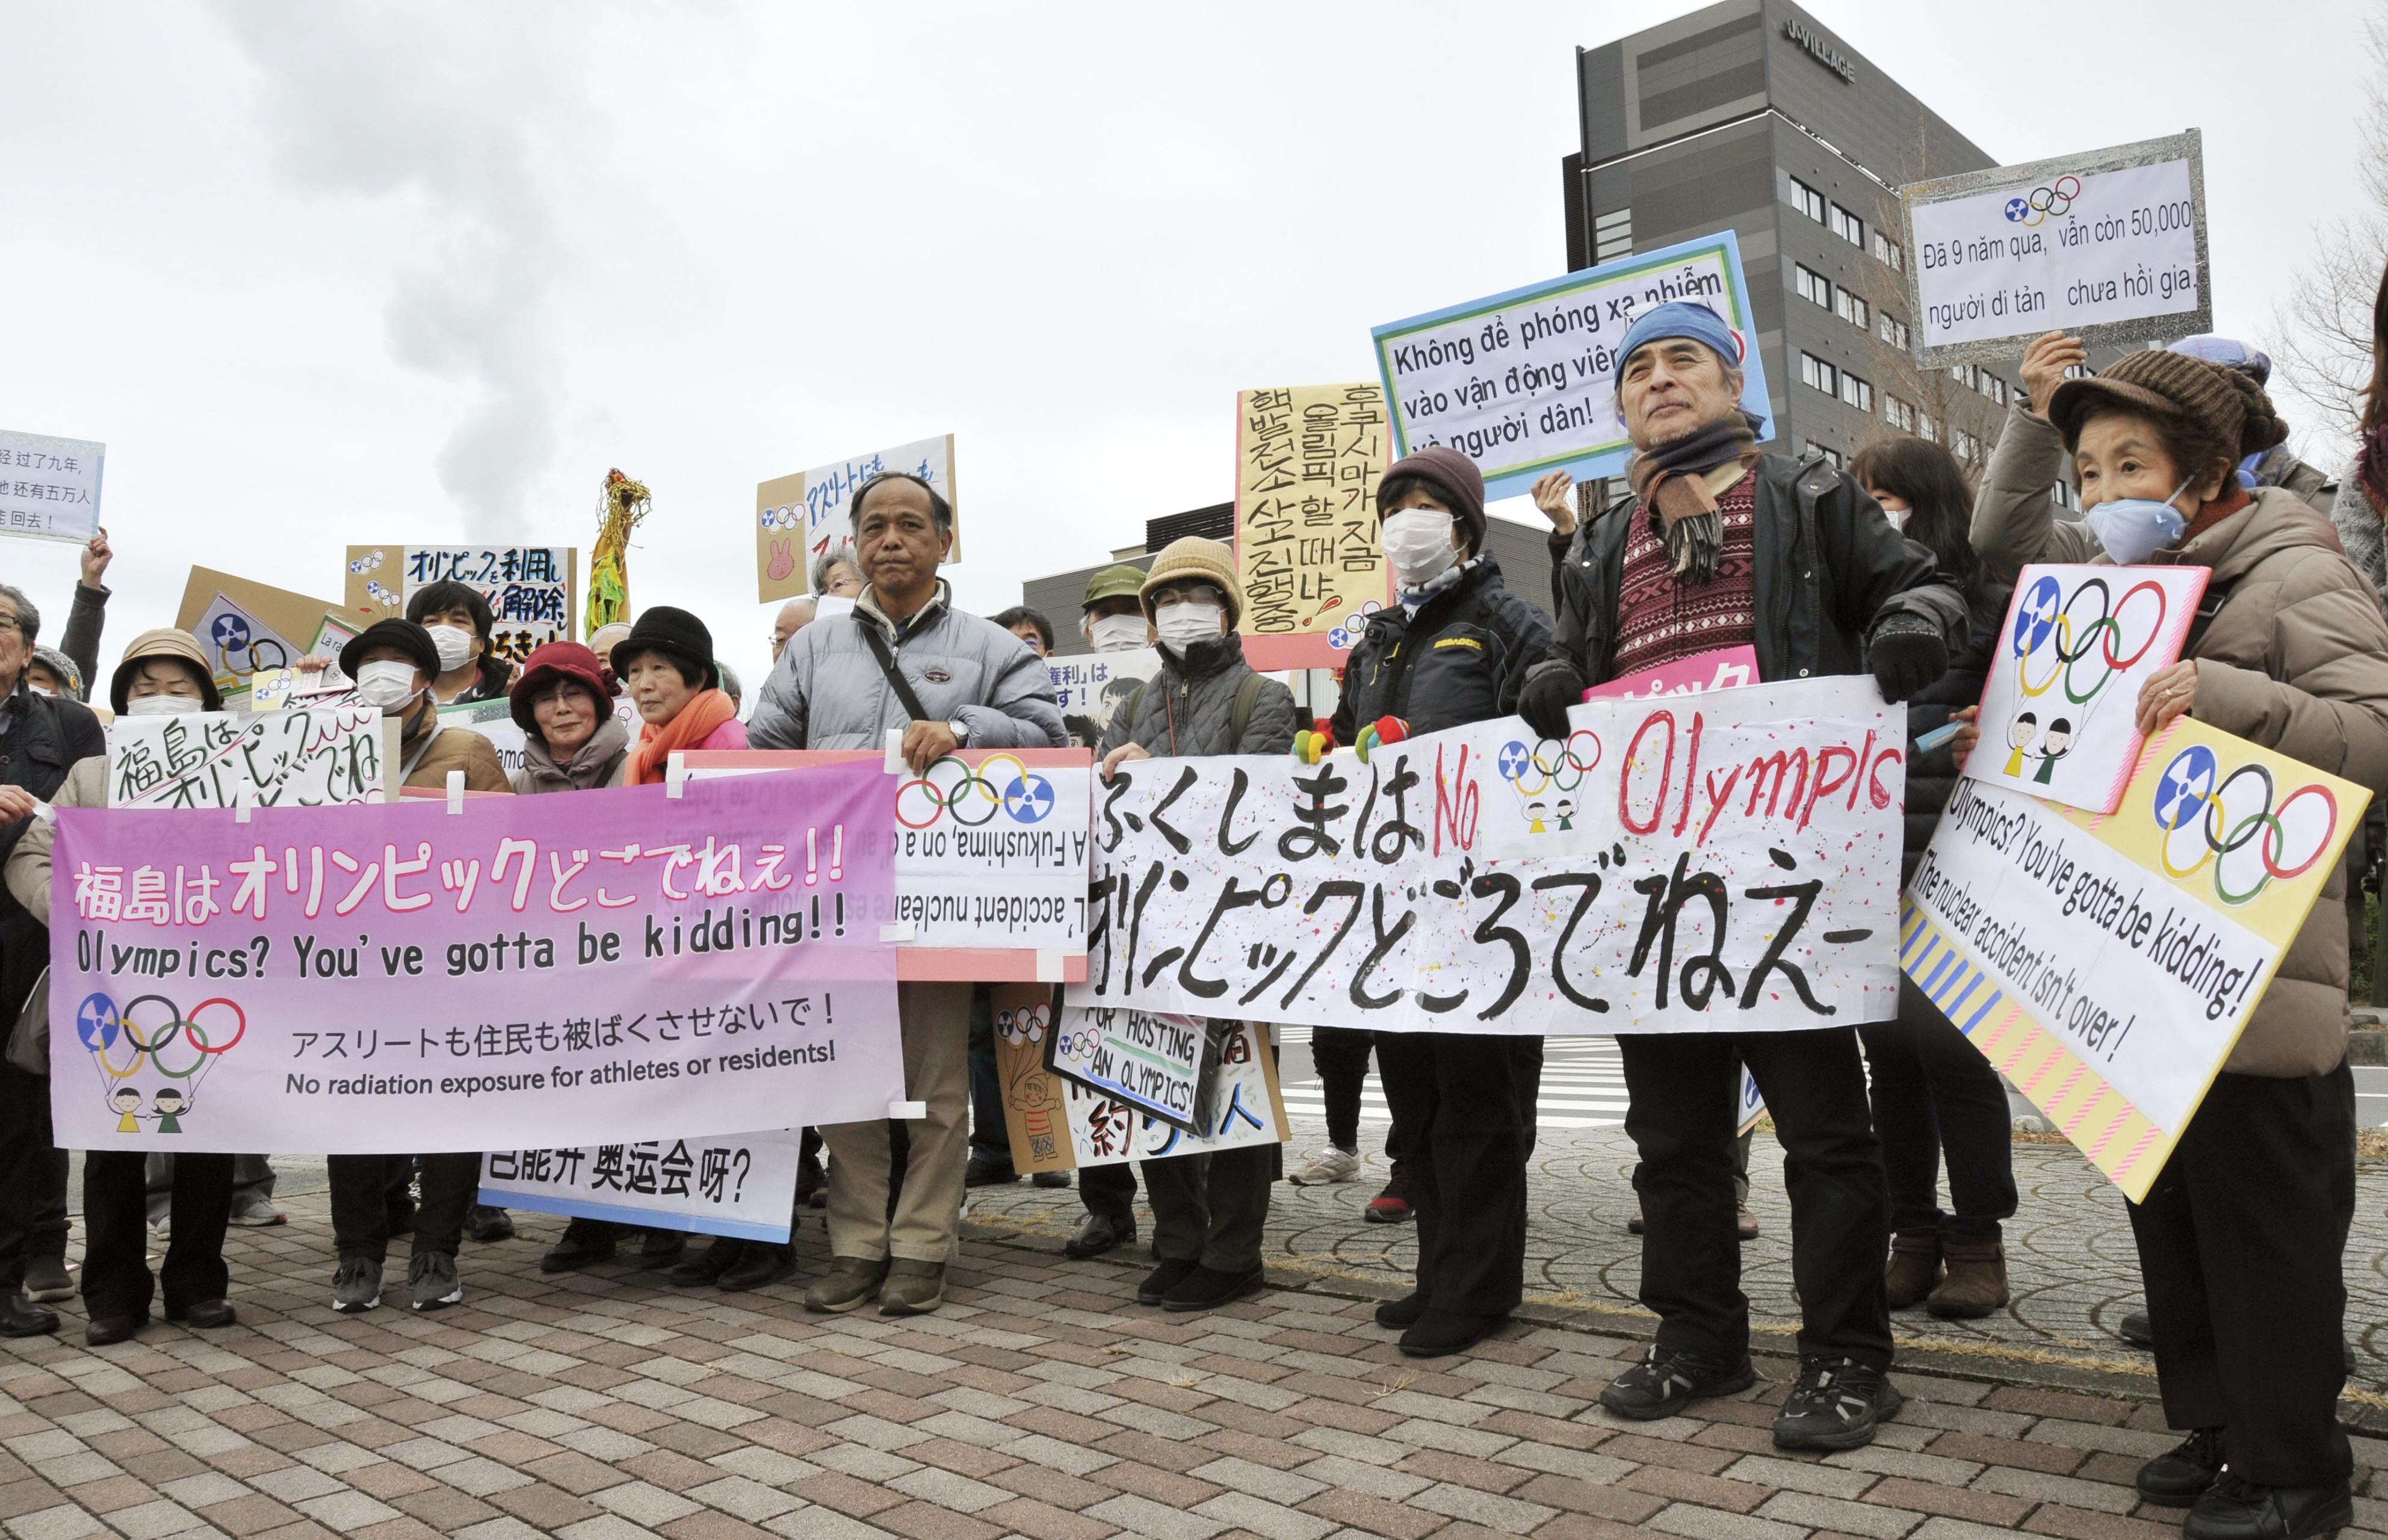 일본 정부가 올 7월 개막하는 도쿄올림픽에서 '부흥' 메시지만을 강조하는 것에 반대하는 사람들이 2월 29일 후쿠시마현 J빌리지 인근에서 시위하고 있다. 〈교도통신〉